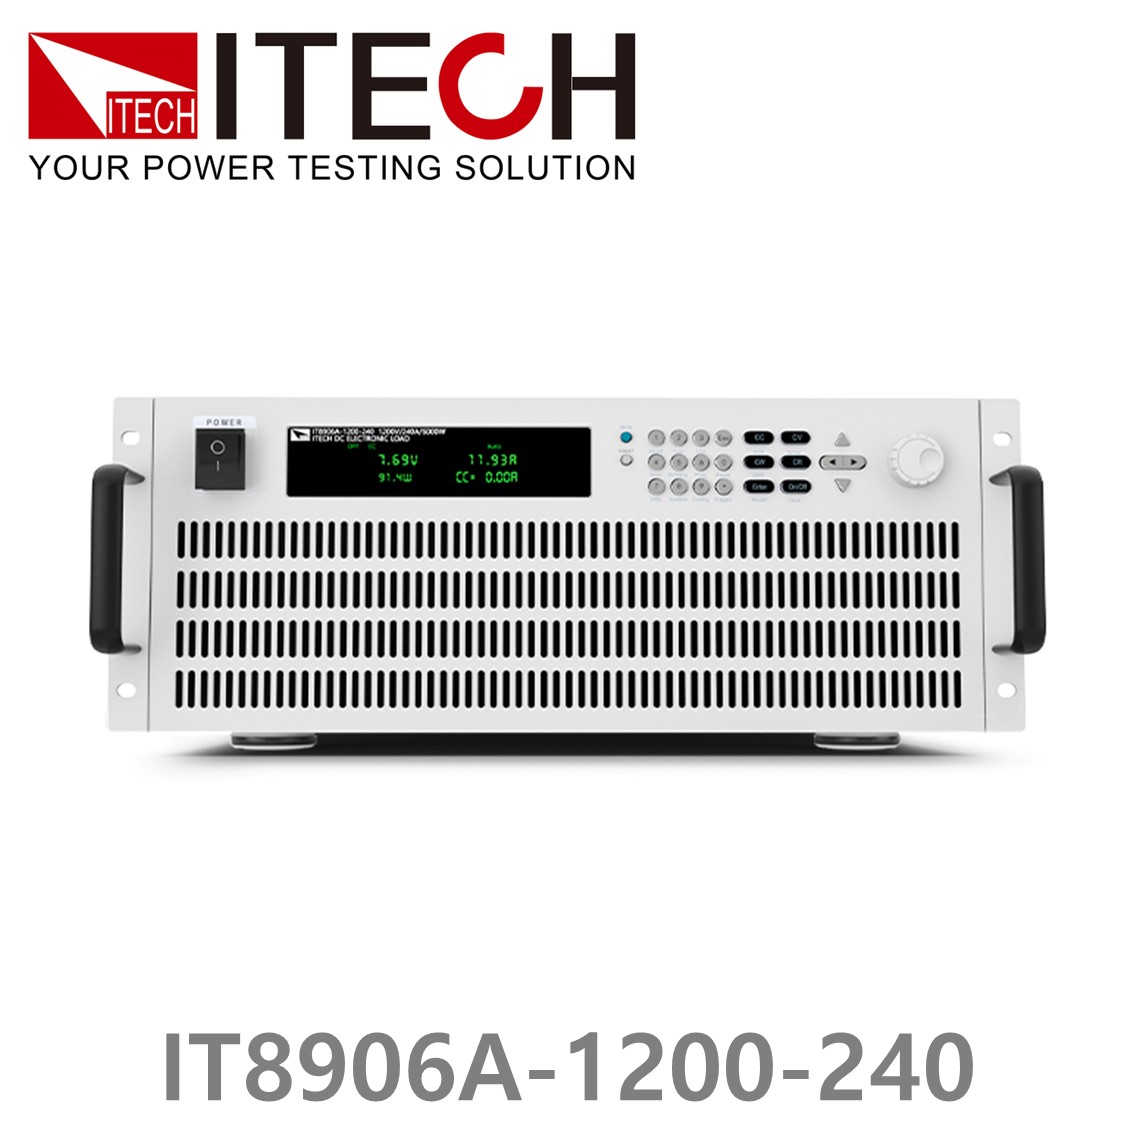 [ ITECH ] IT8906A-1200-240  고성능 고전력 DC 전자로드 1200V/240A/6kW (4U)